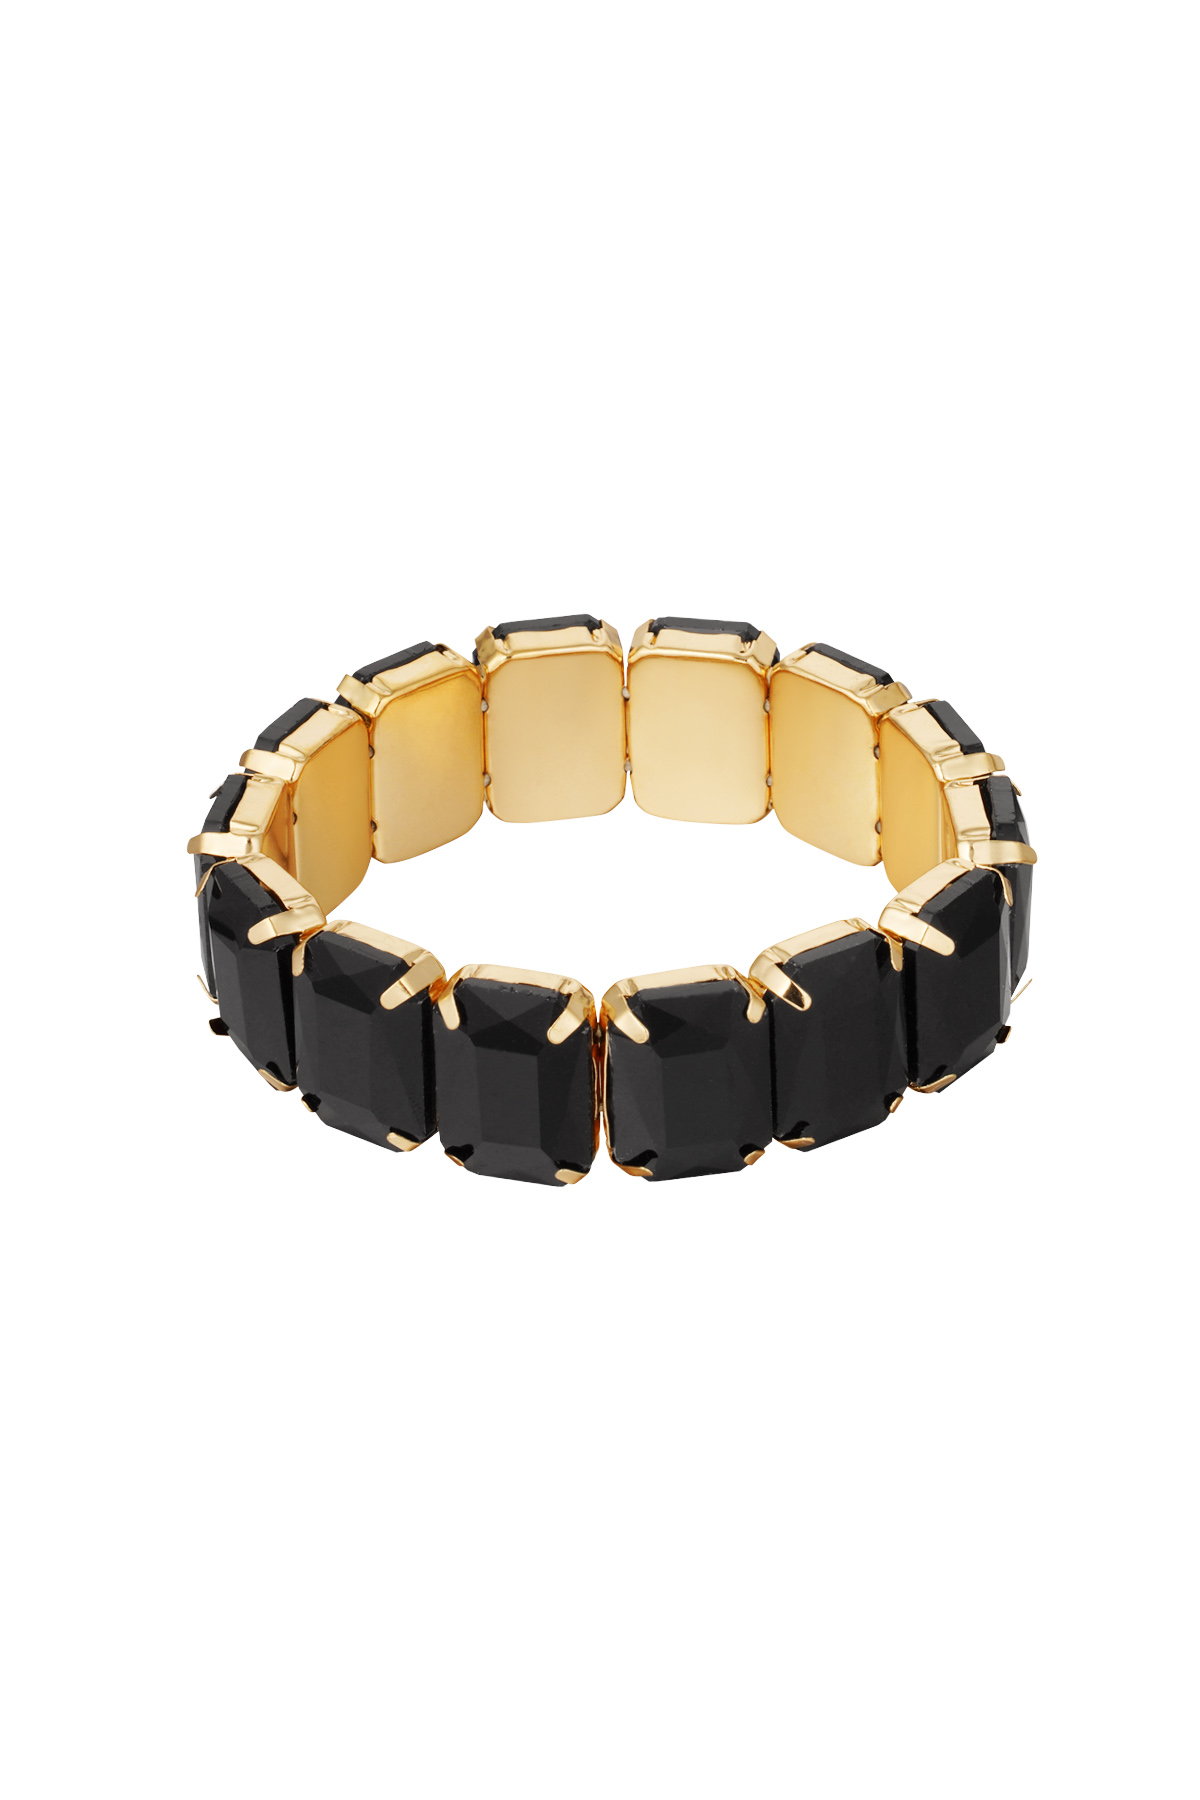 Slave bracelet large stones - gold/black 